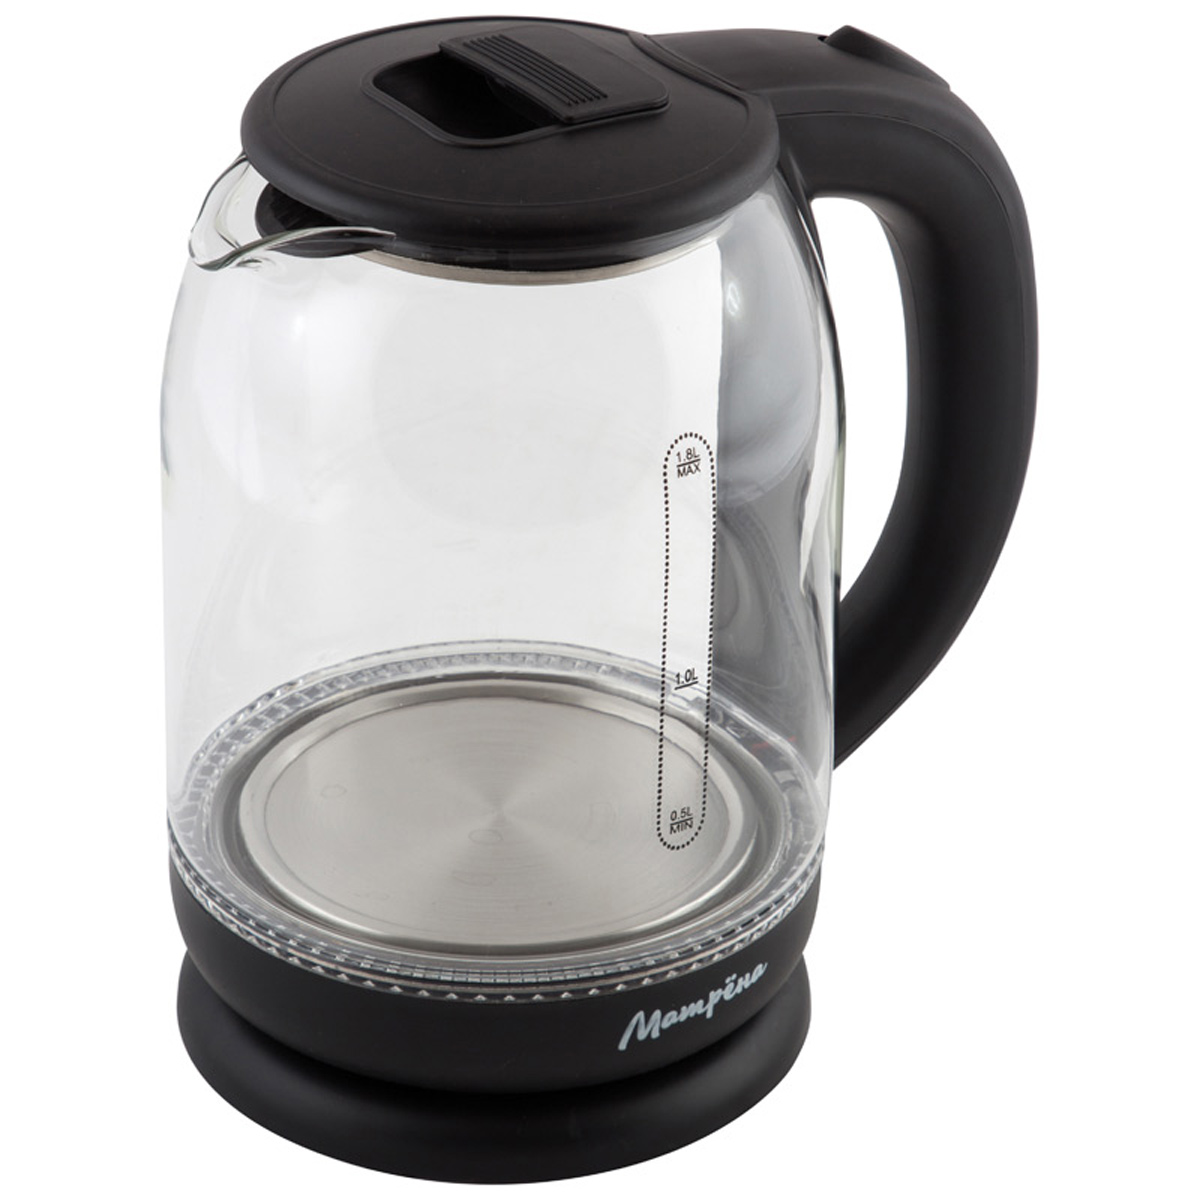 Чайник МАТРЕНА MA-007 электрический (1,8 л) стекло черный (005420)Купить